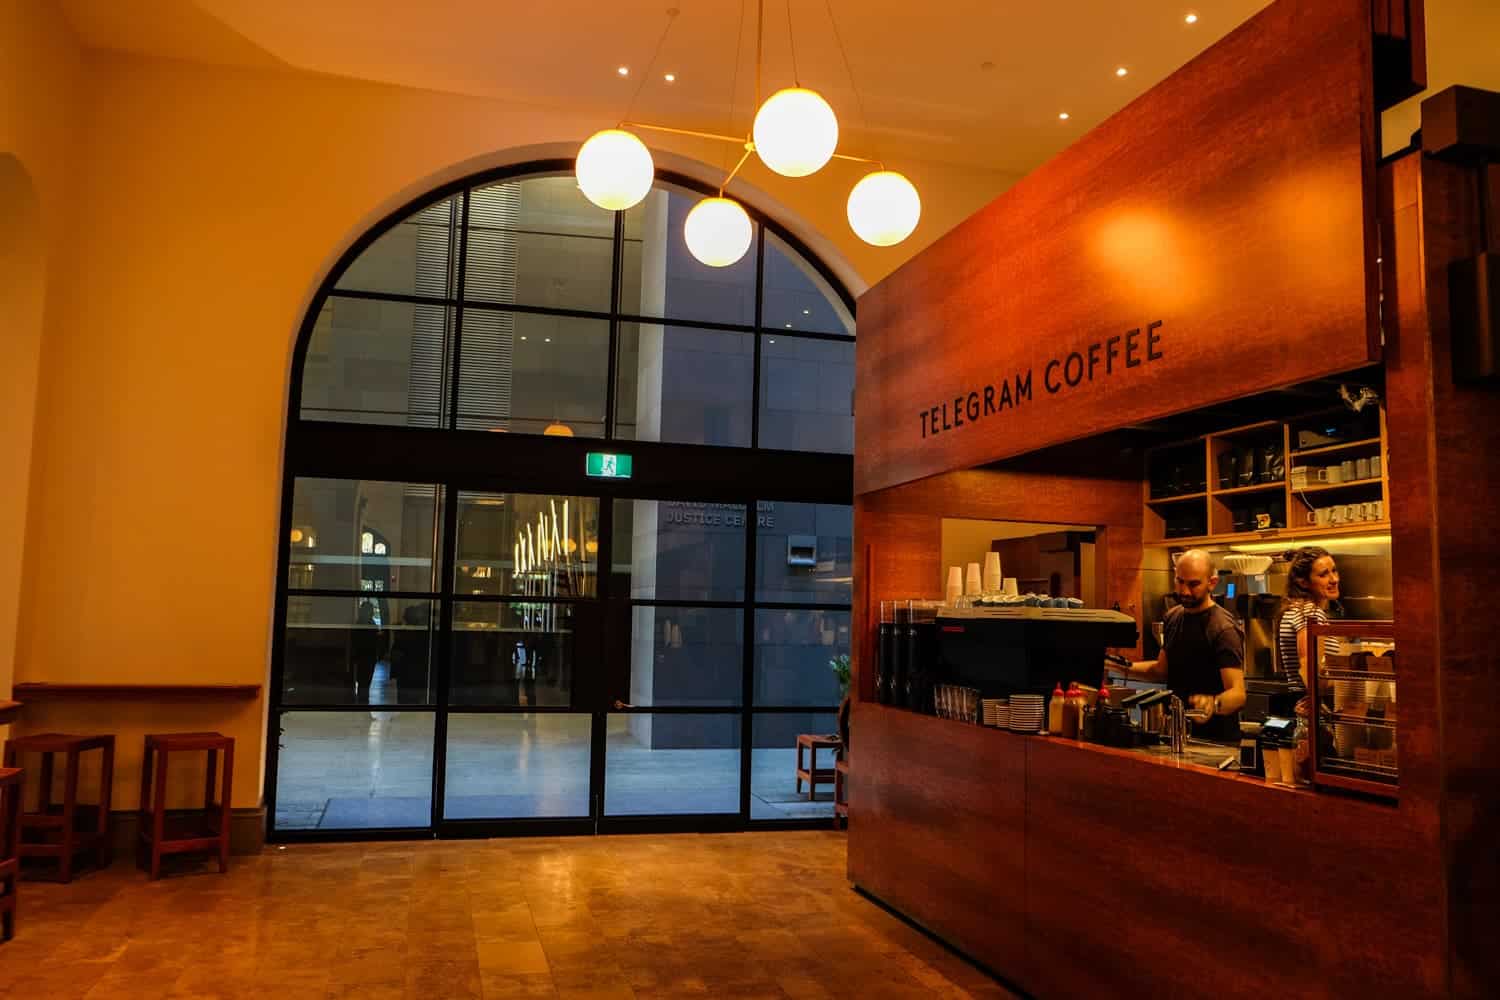 La pequeña cafetería Telegram dentro de los edificios estatales de Perth